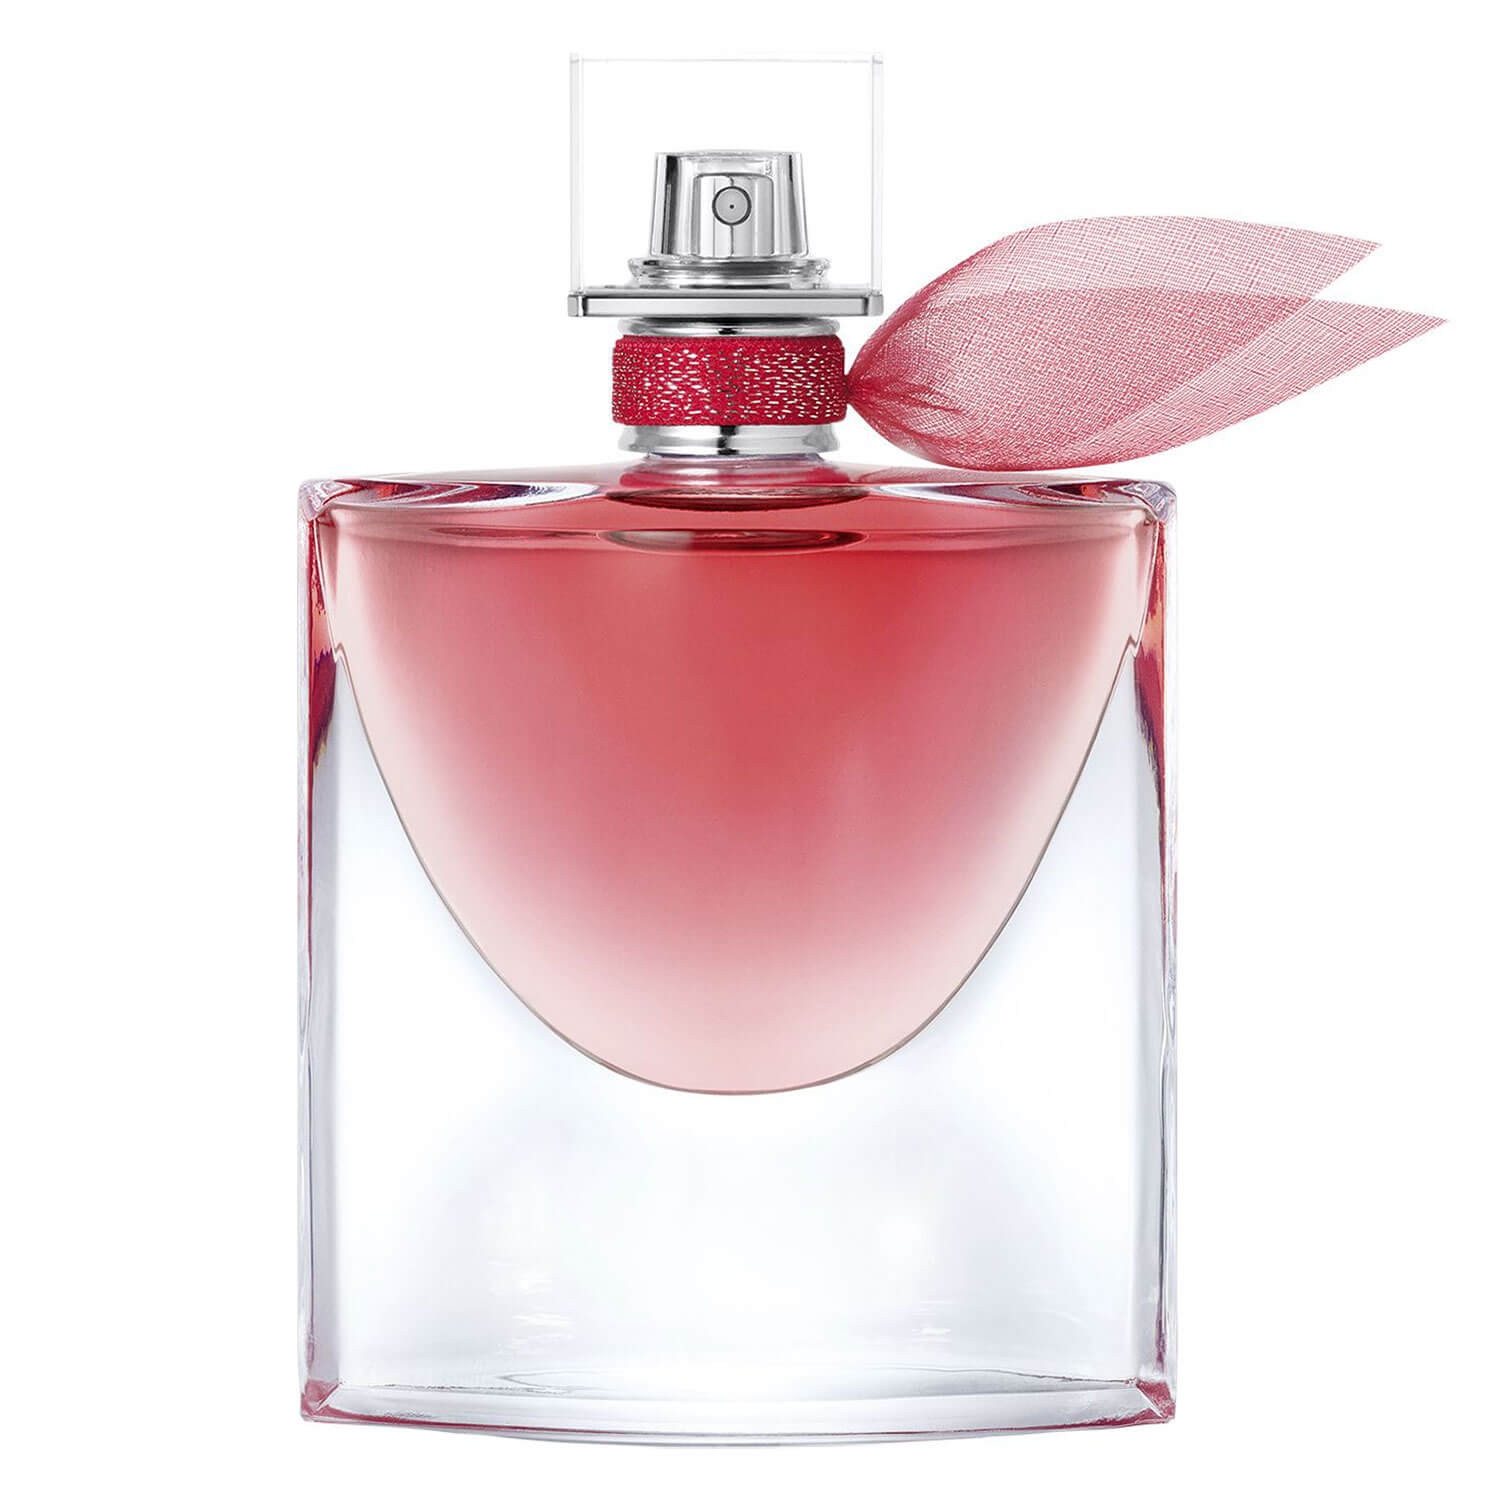 Produktbild von La Vie est Belle - Intensément Eau de Parfum